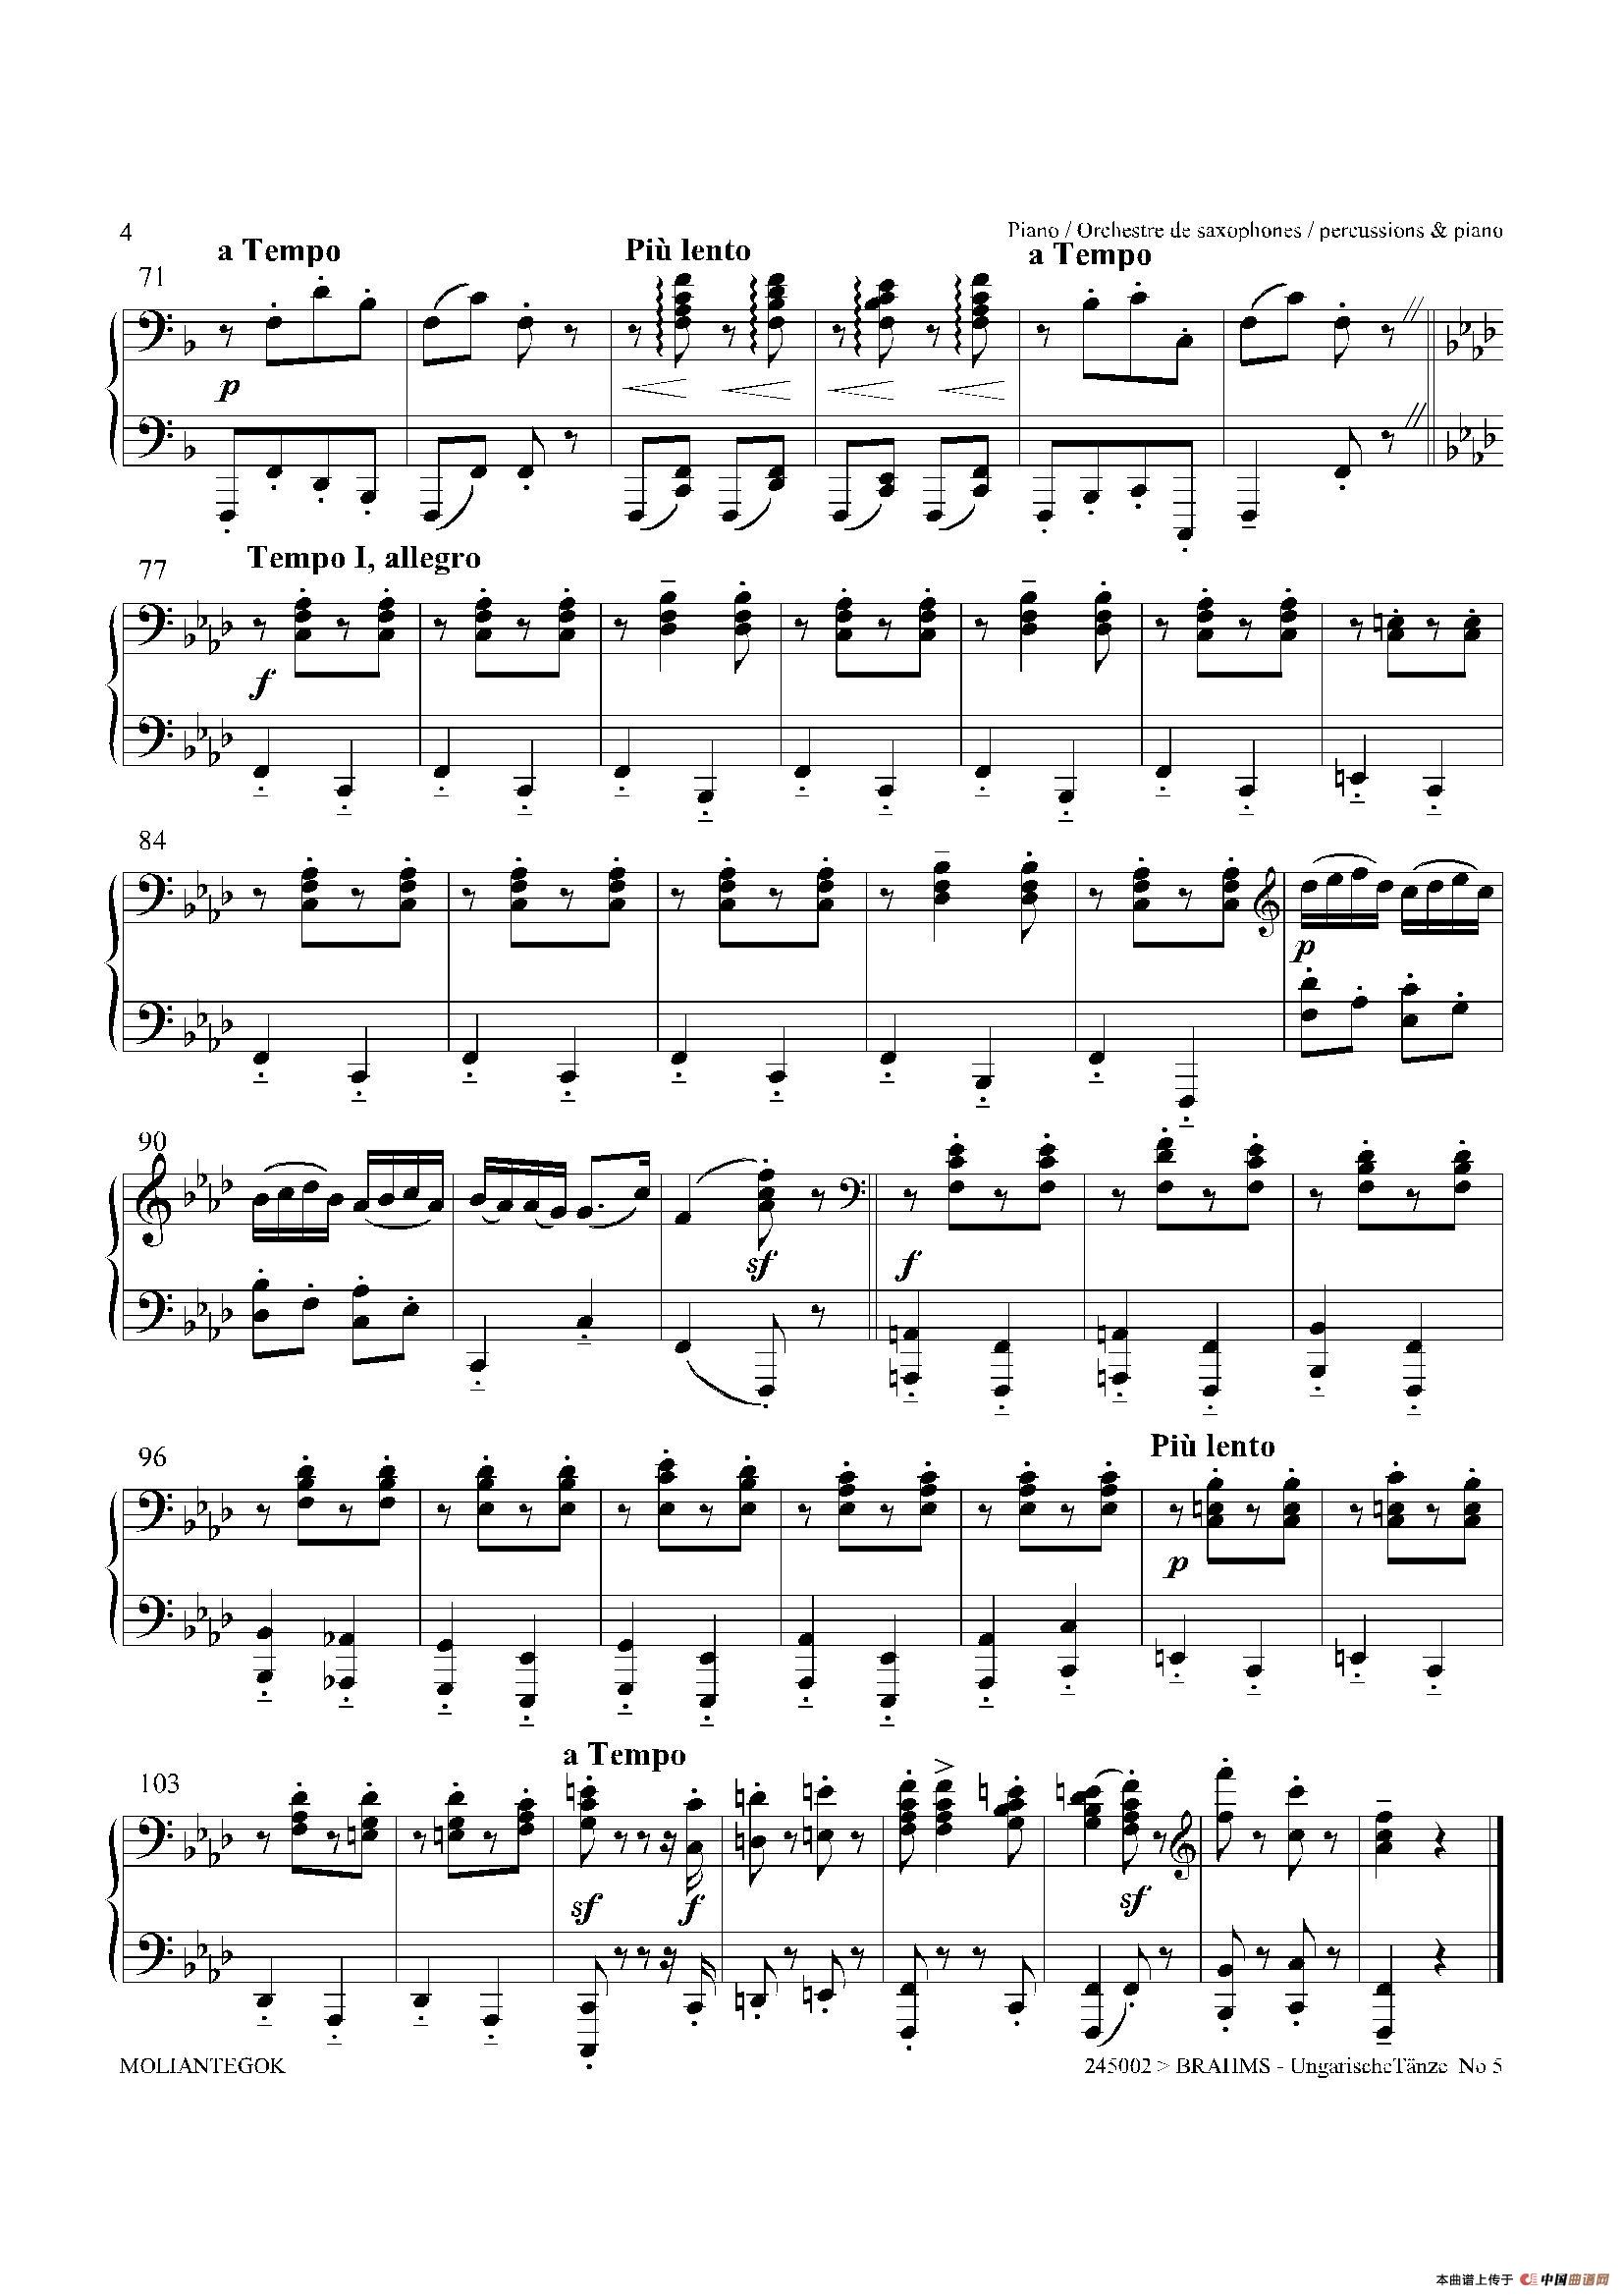 《Ungarische Tnze No 5》钢琴曲谱图分享